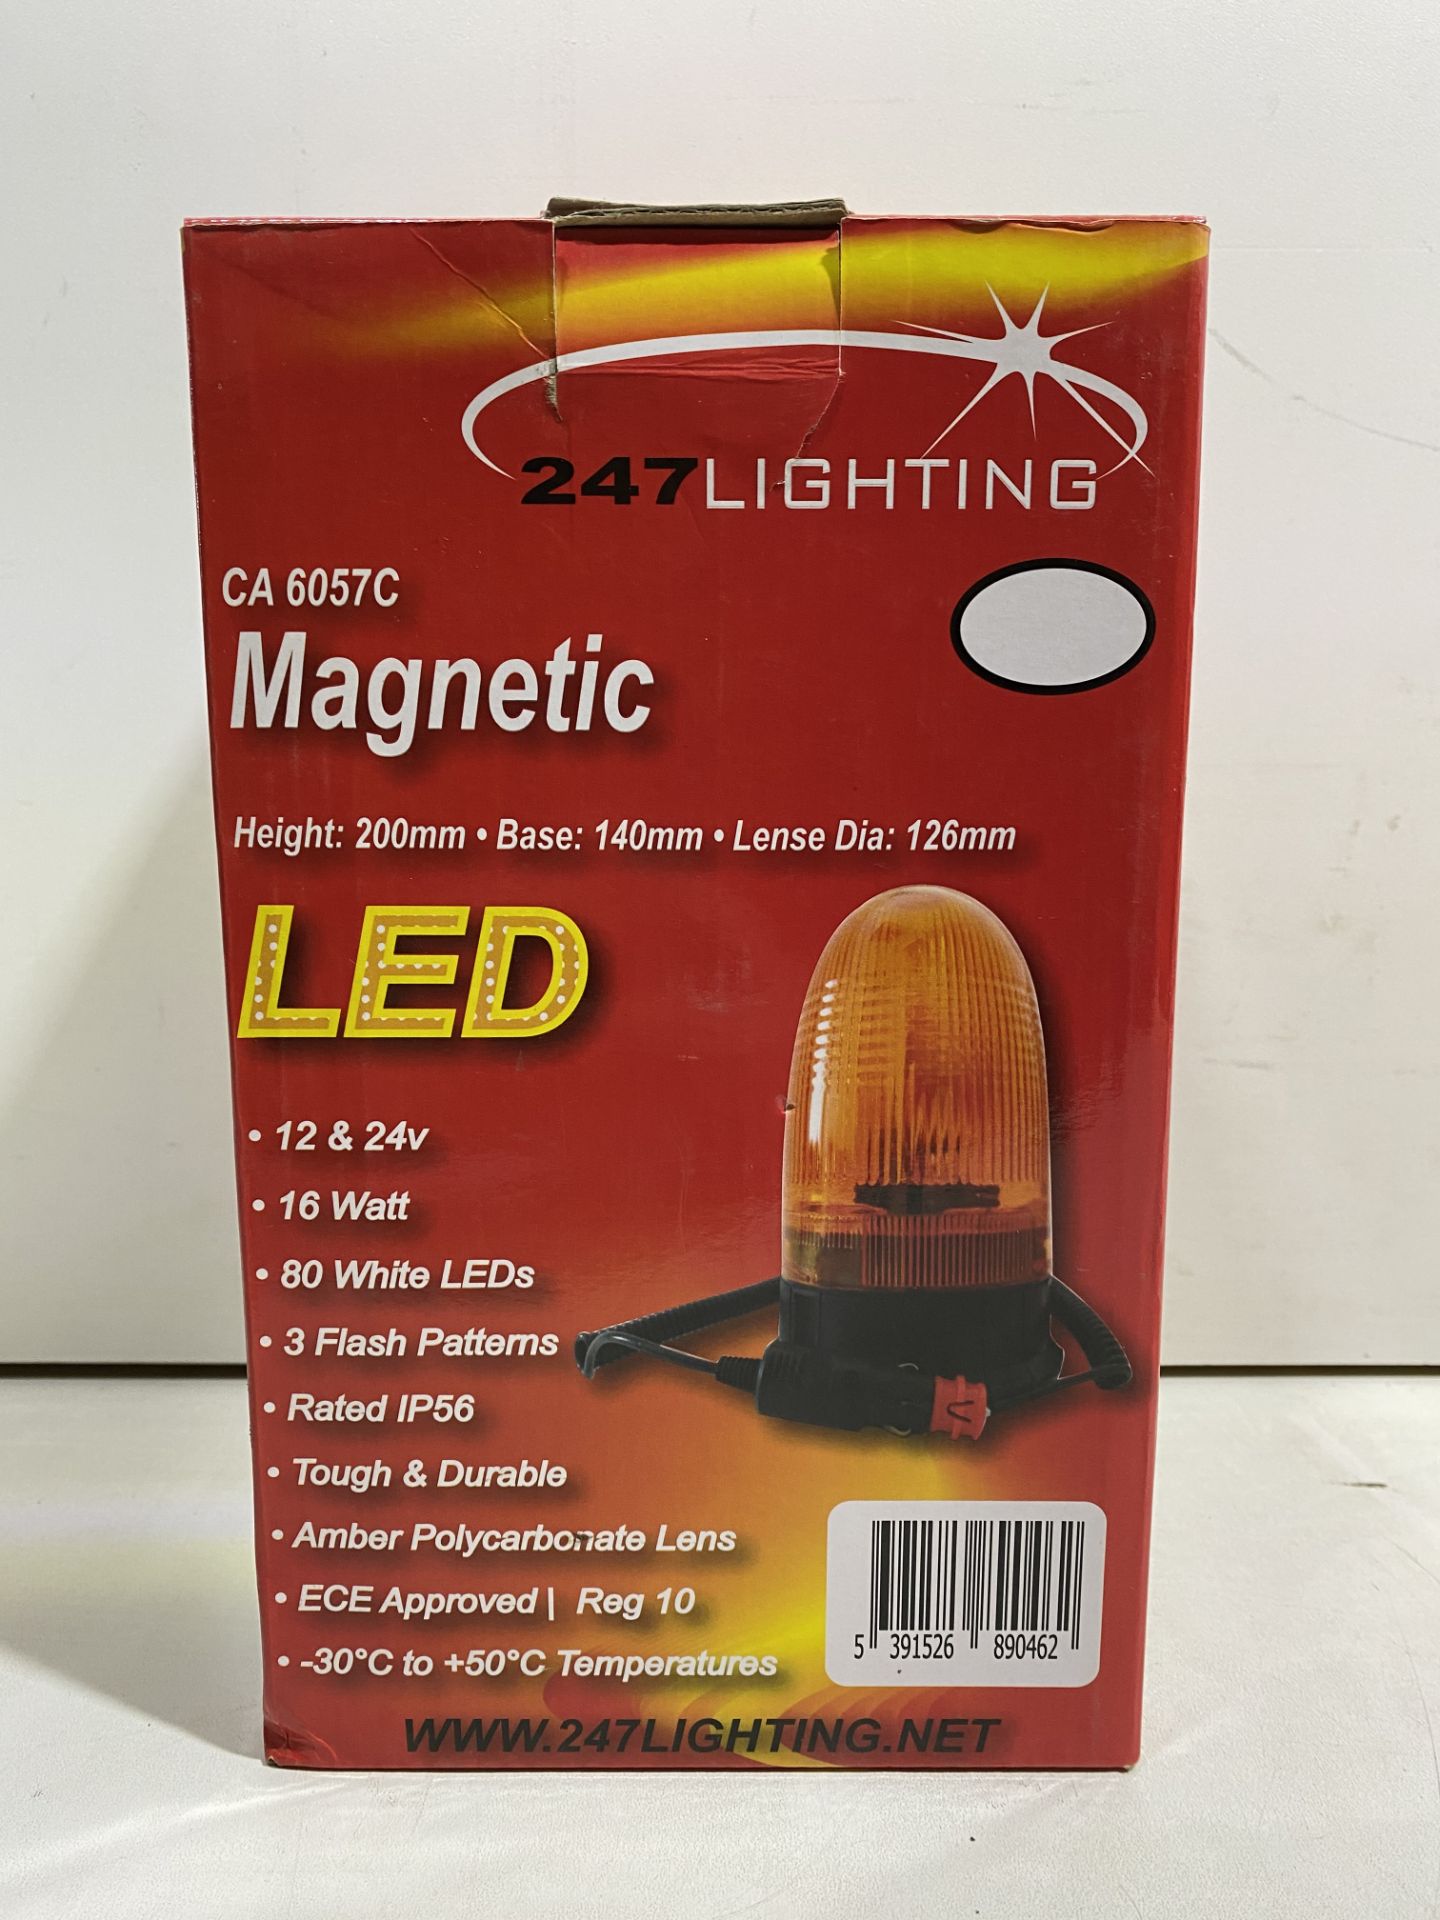 2 x 247 Lighting Magnetic LED Beacons